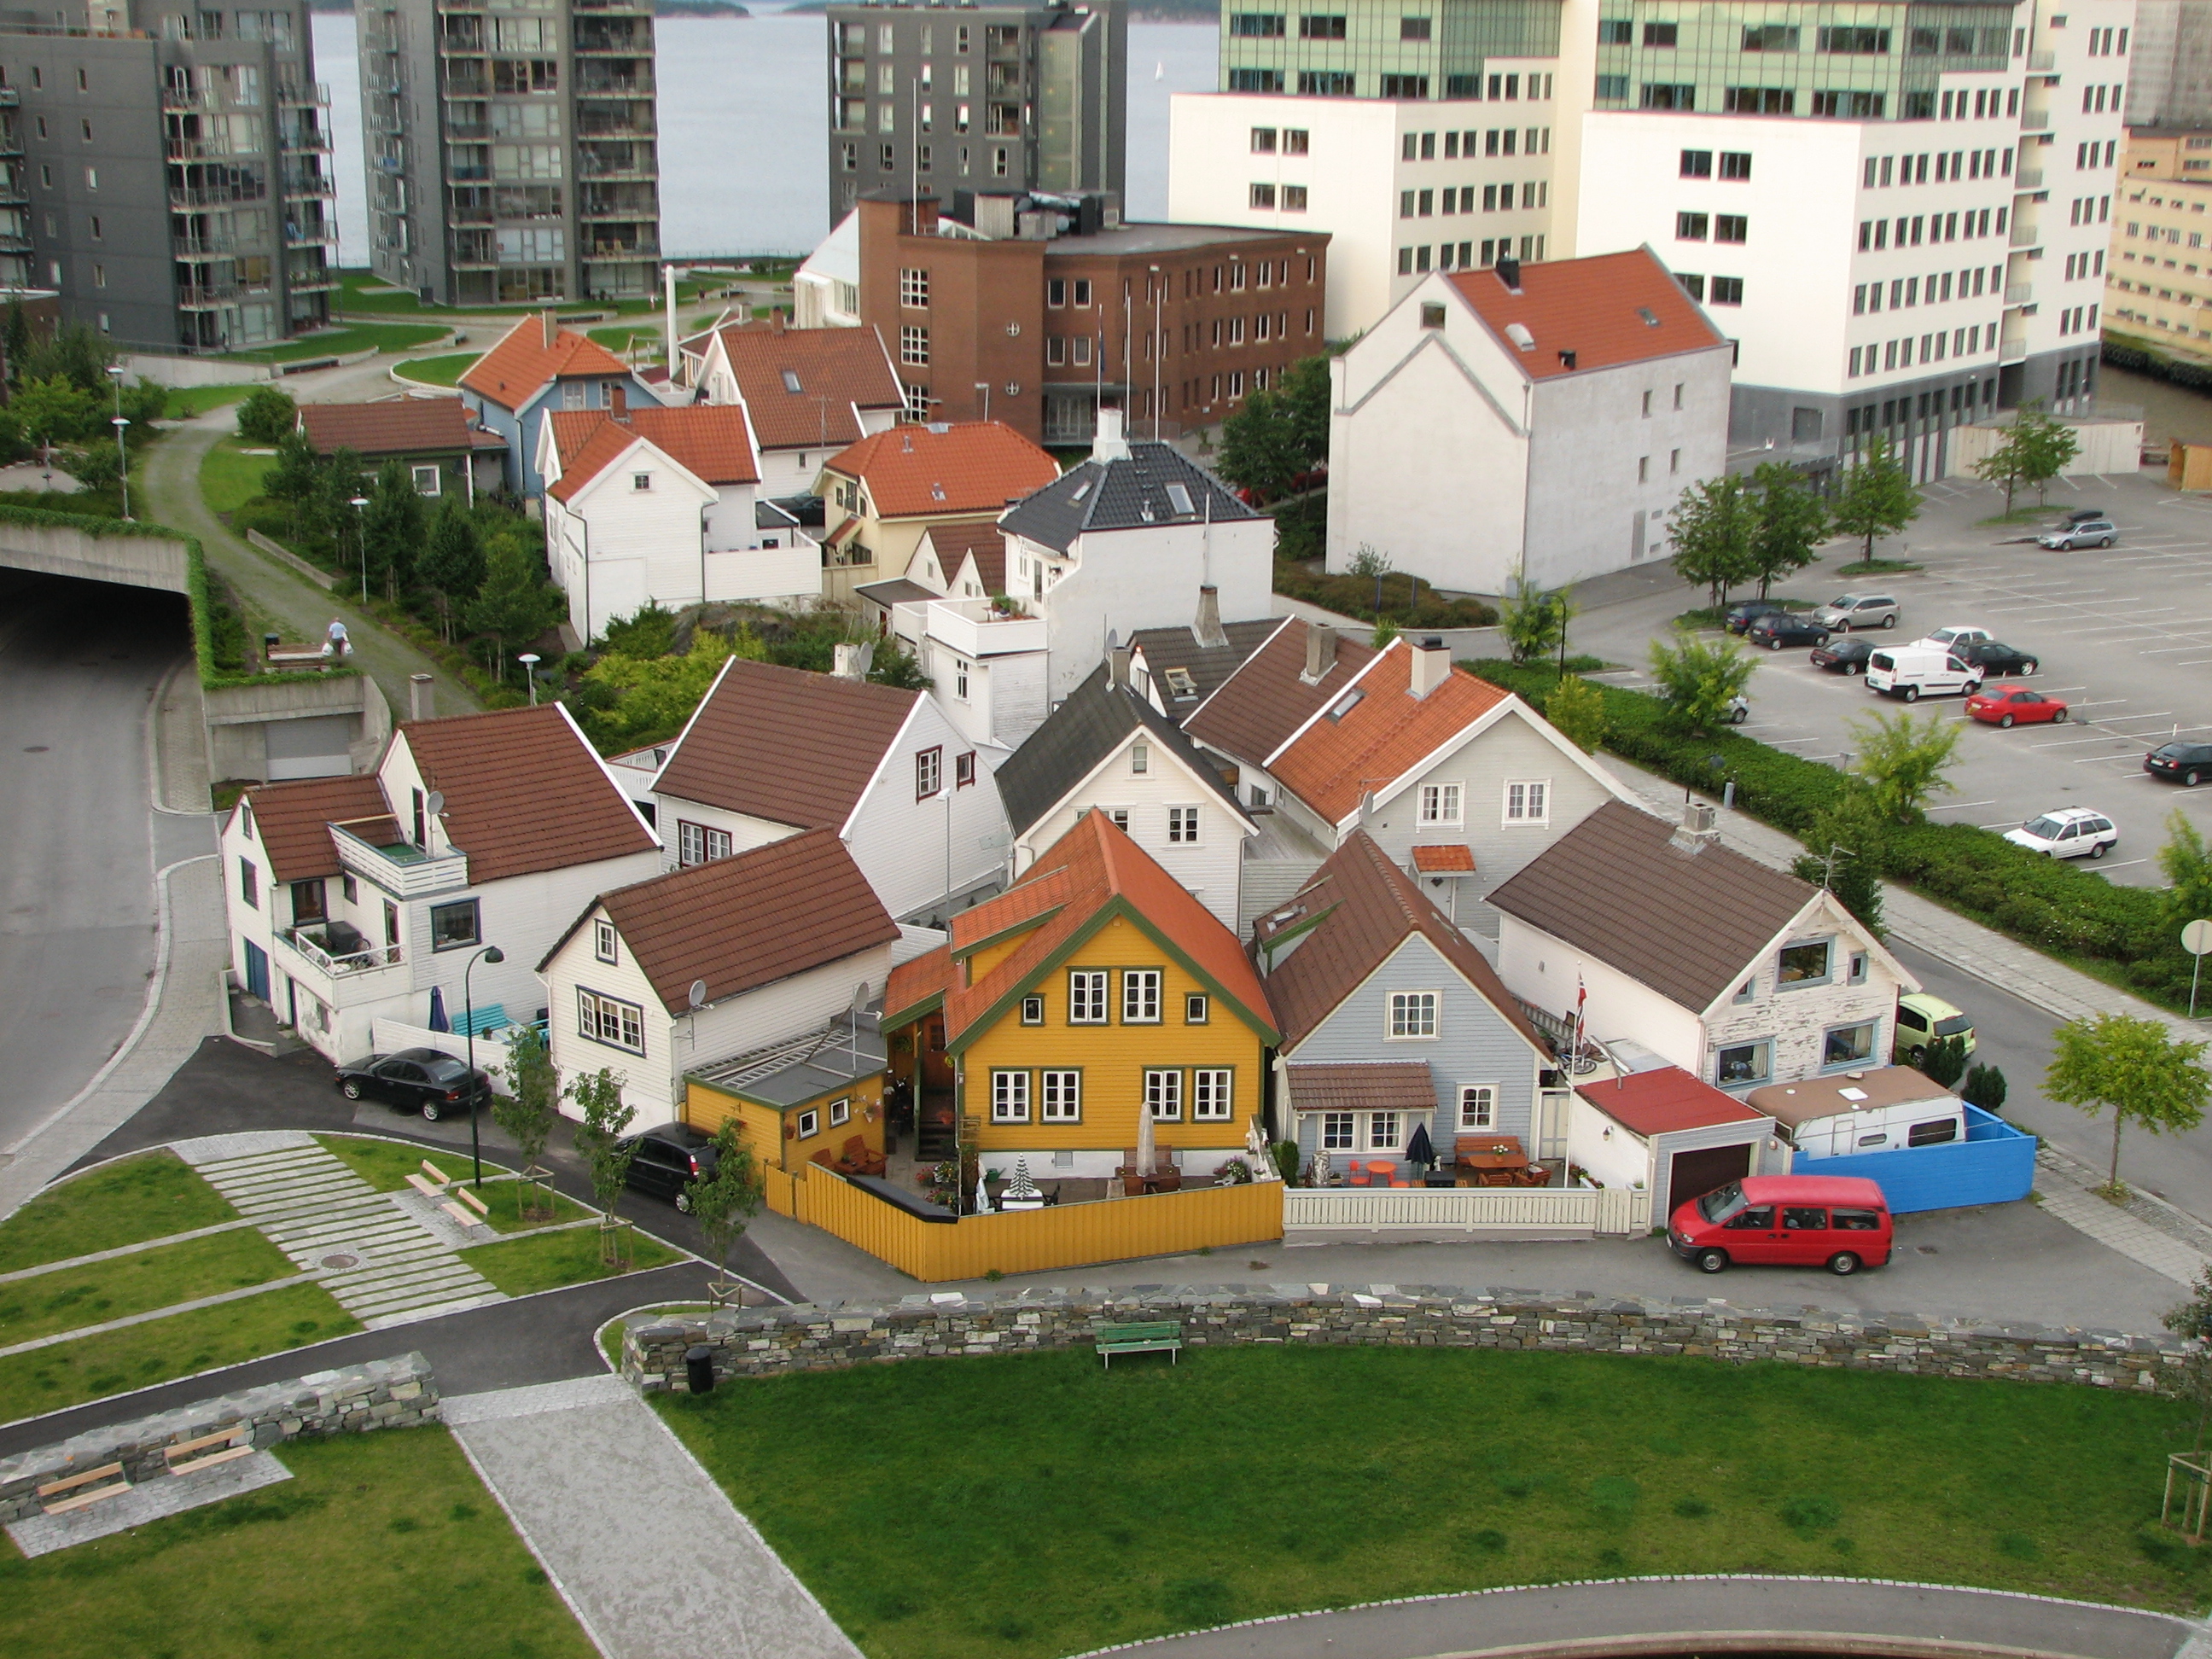 Stavanger - houses below the bridge